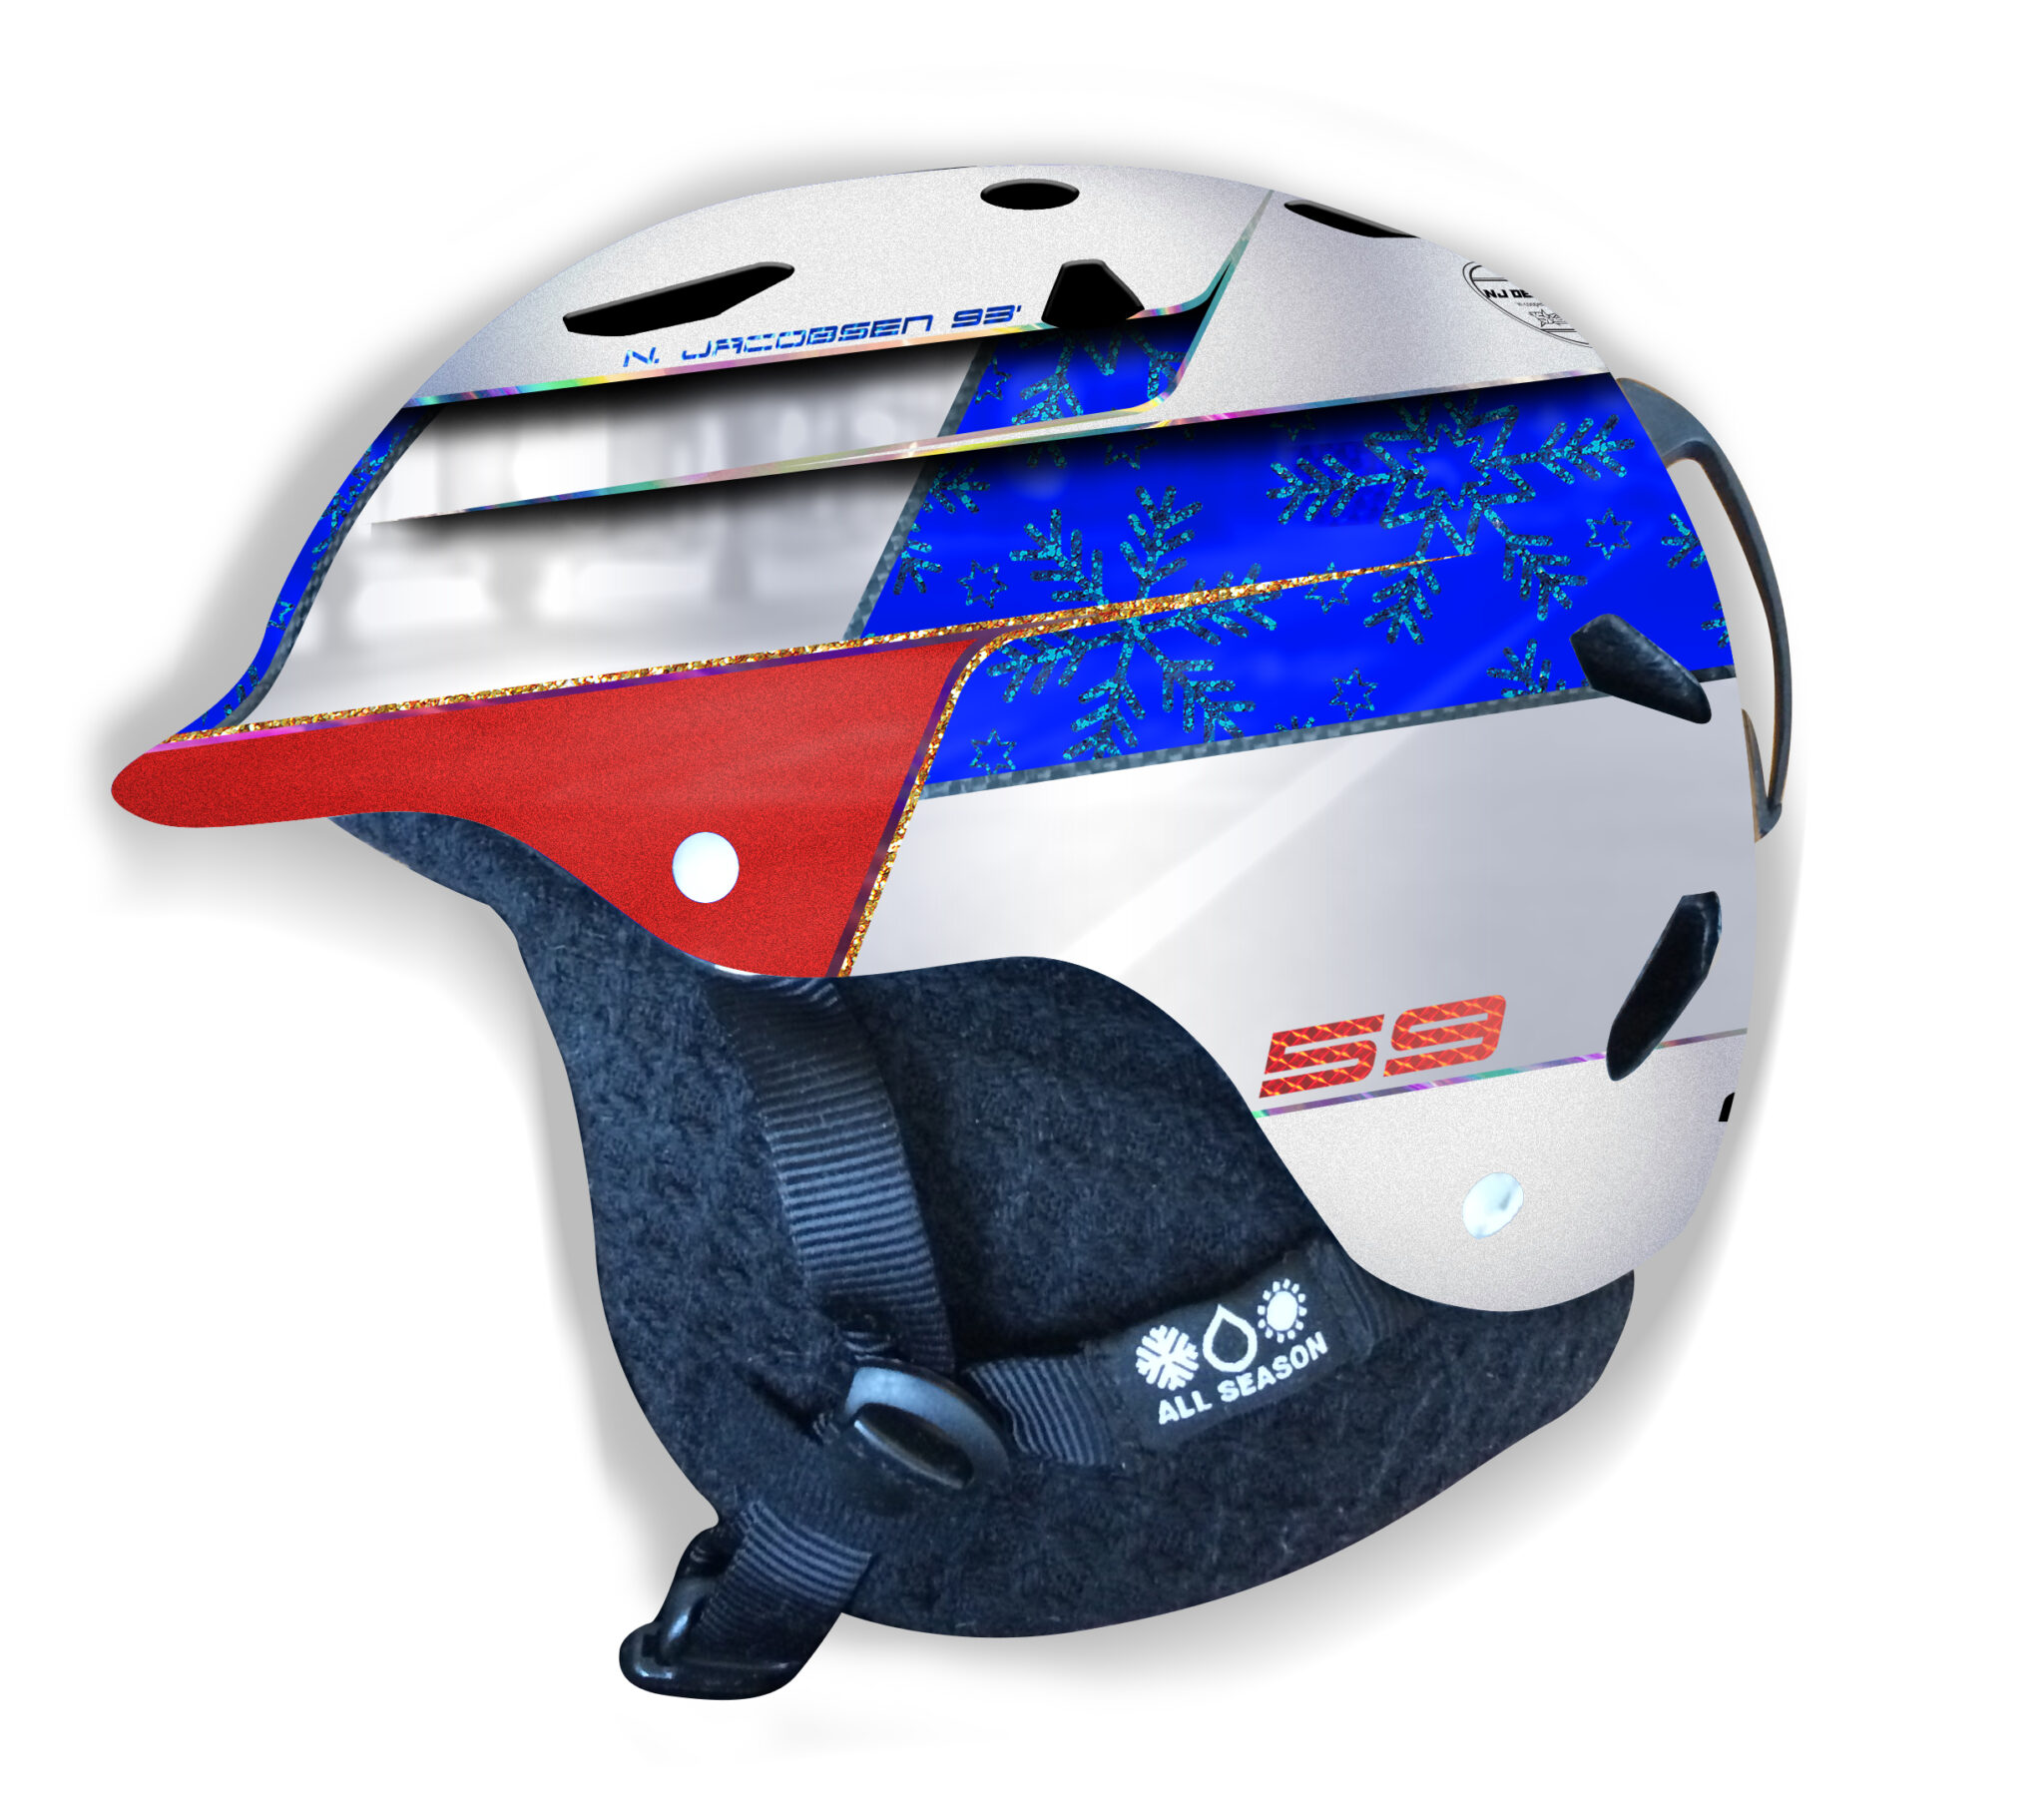 Custom helmet design